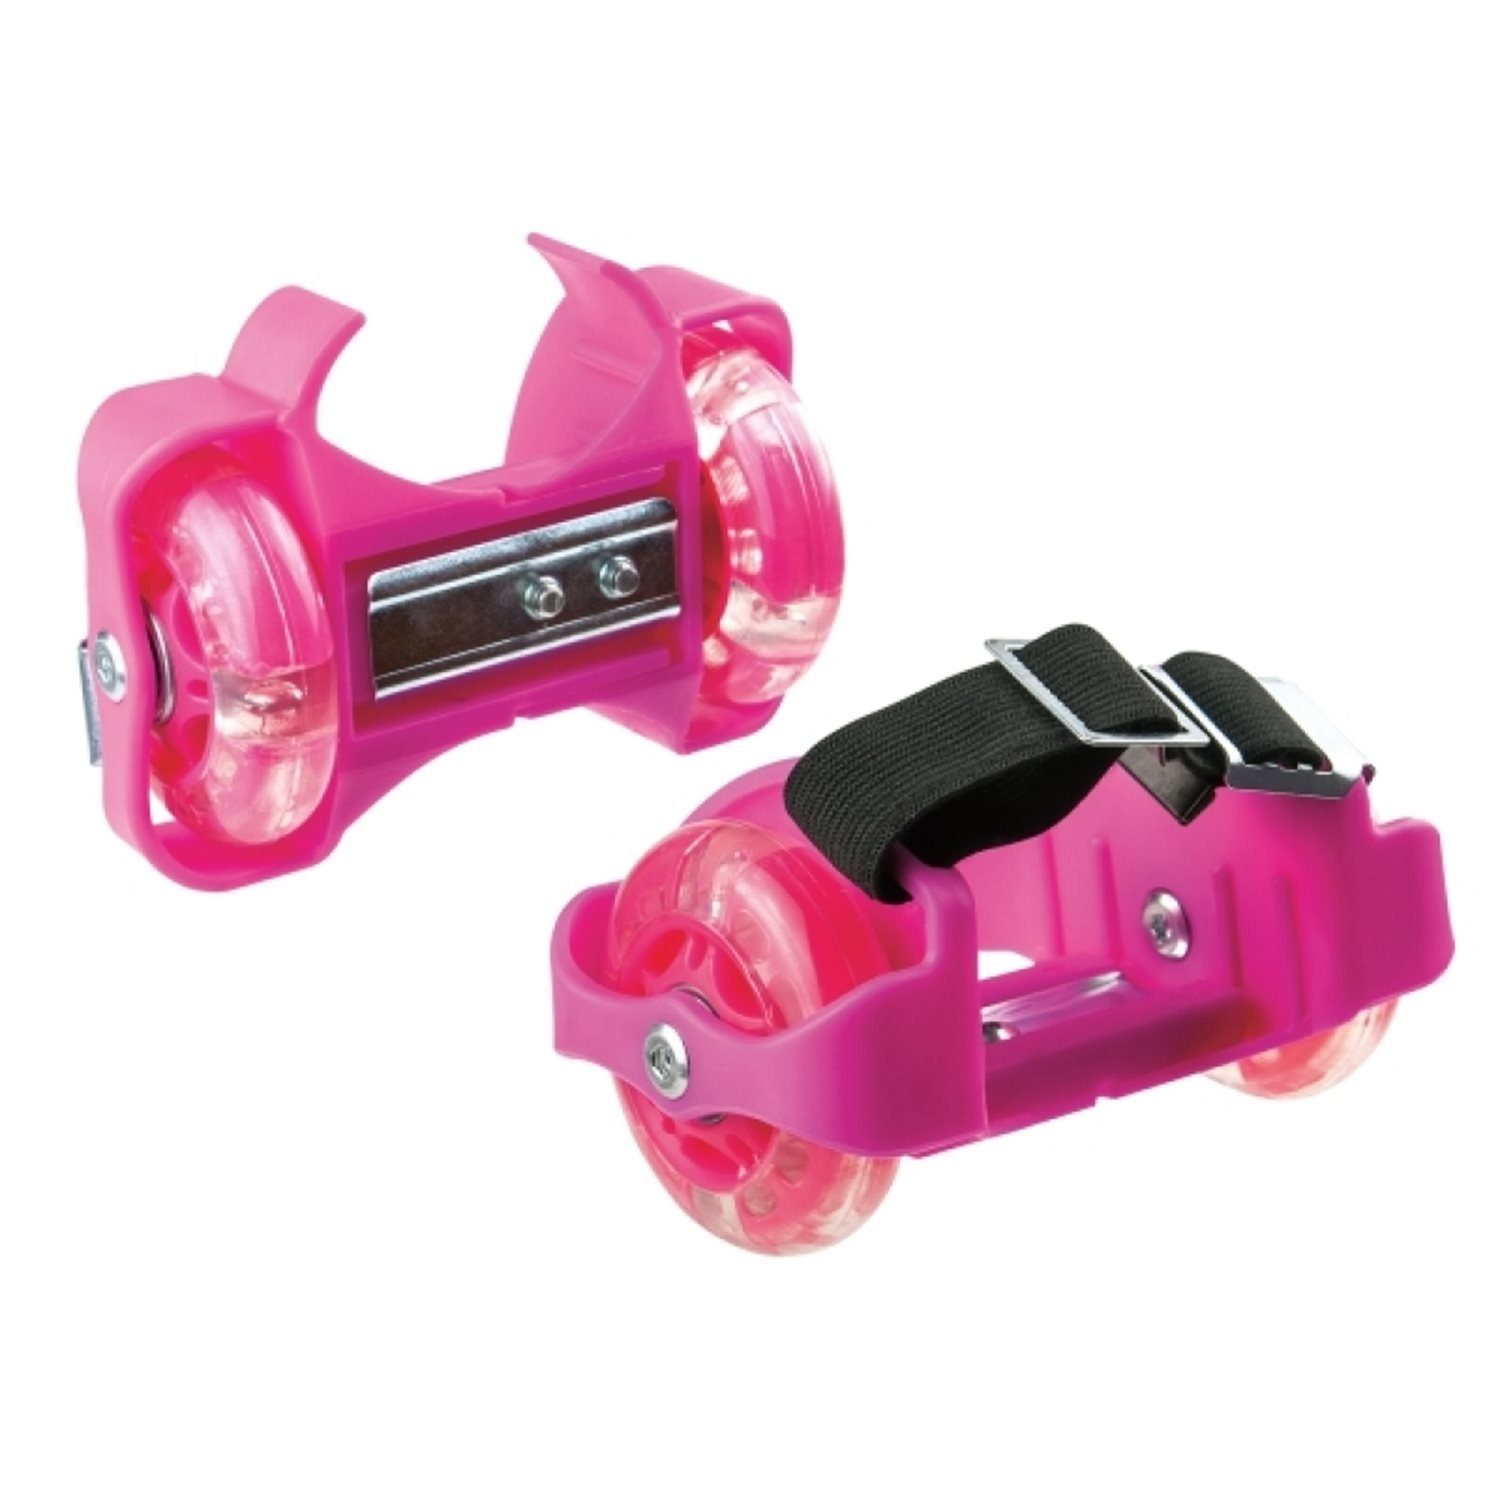 Basketballkorb 73420491 New Fersenroller mit LED, pink Vedes Sports